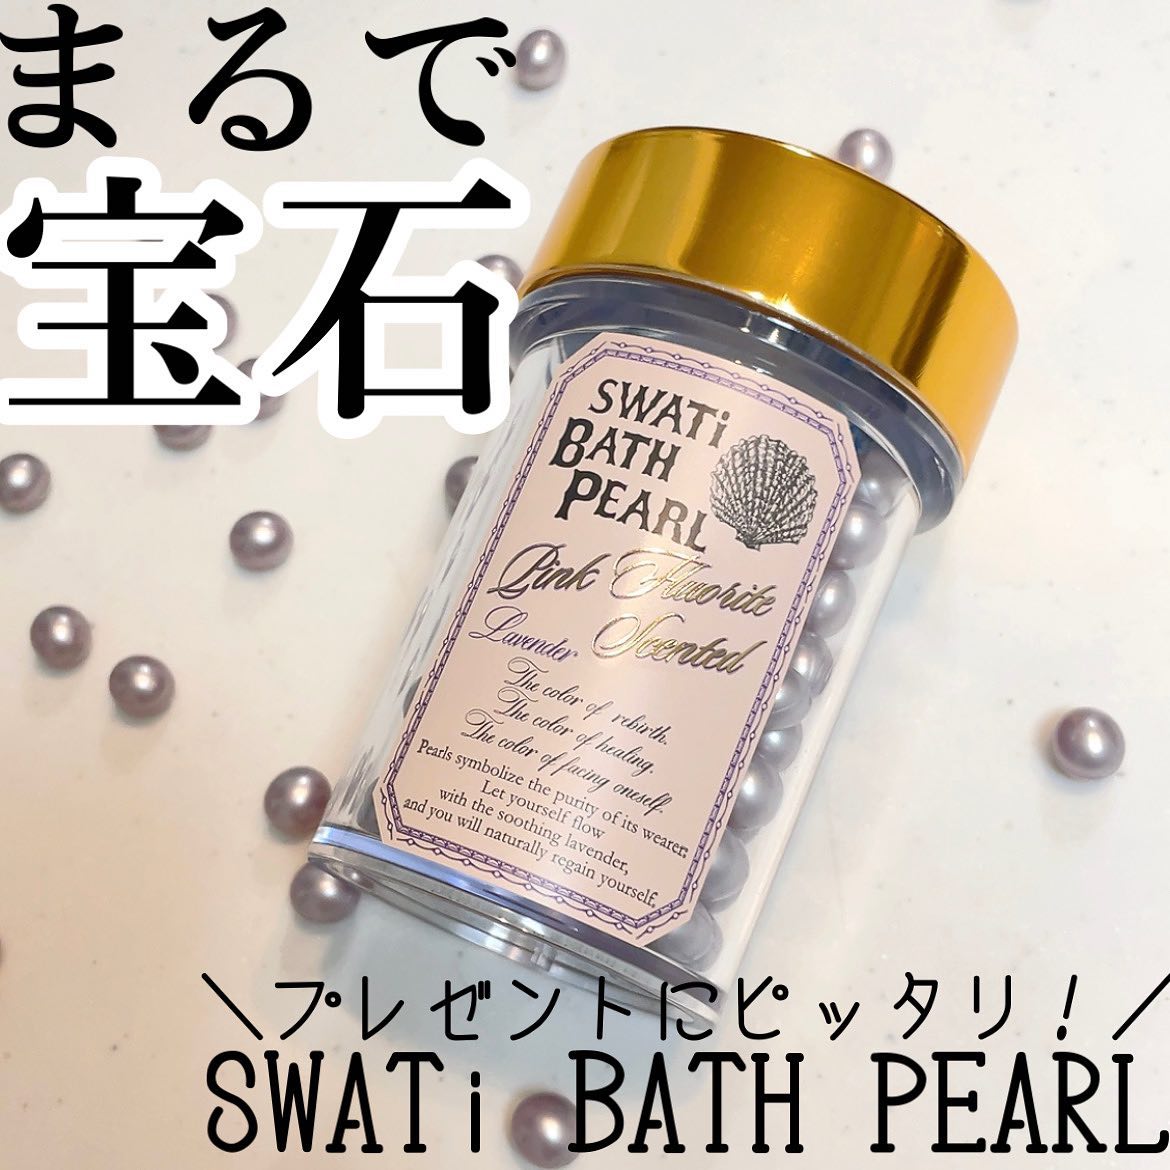 【SWATi BATH PEARL】kanan_cosme様